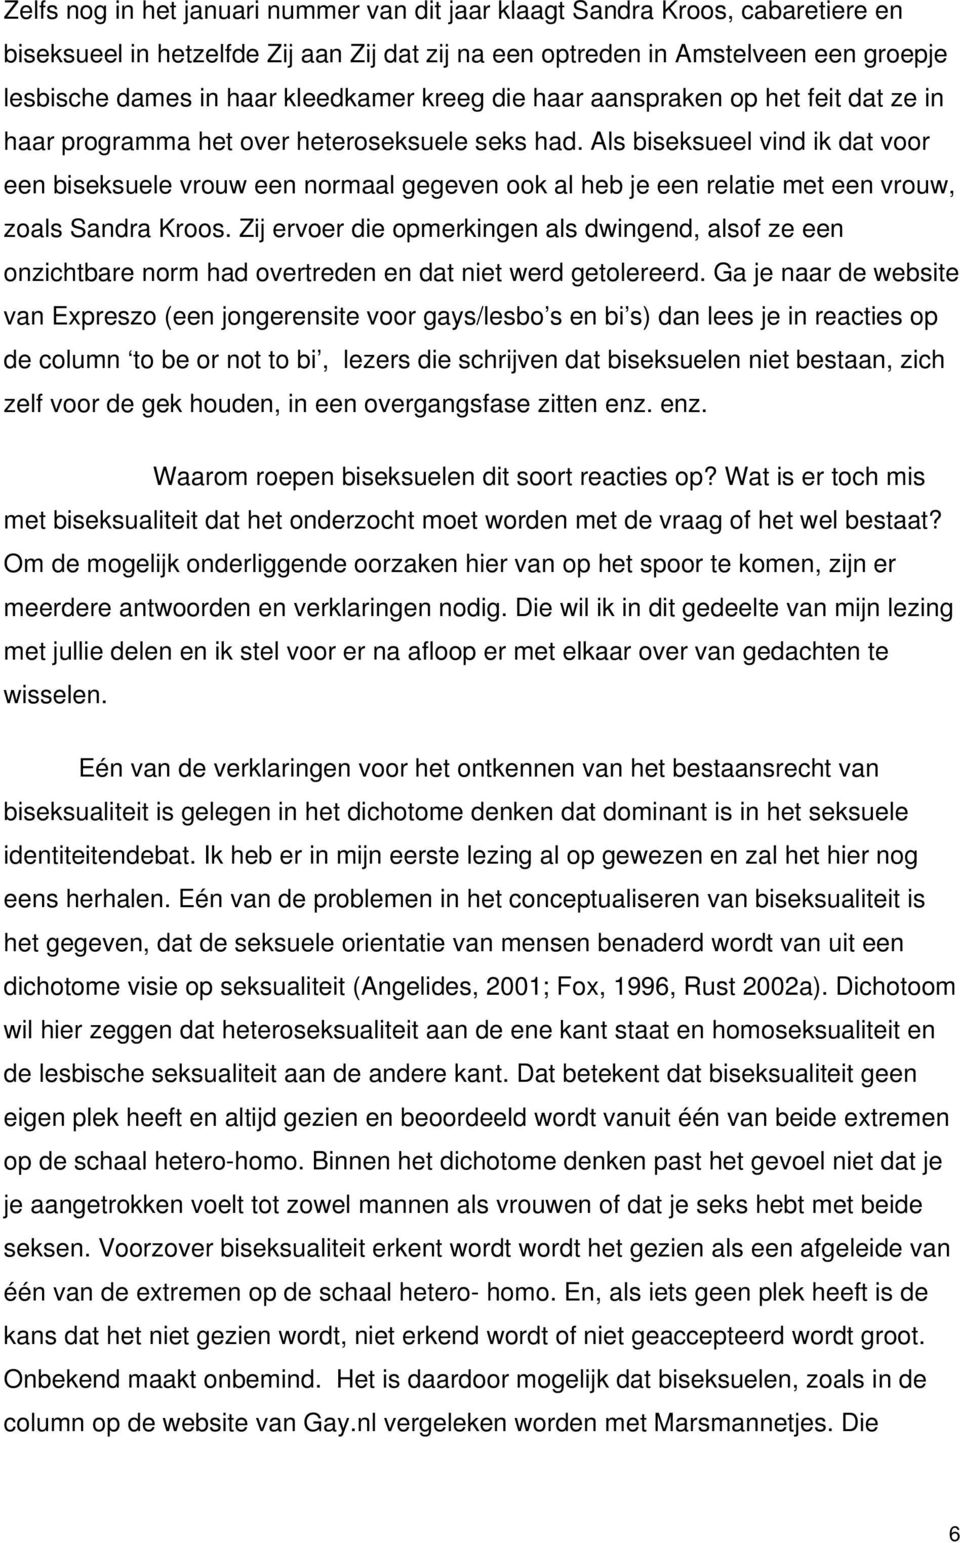 Als biseksueel vind ik dat voor een biseksuele vrouw een normaal gegeven ook al heb je een relatie met een vrouw, zoals Sandra Kroos.